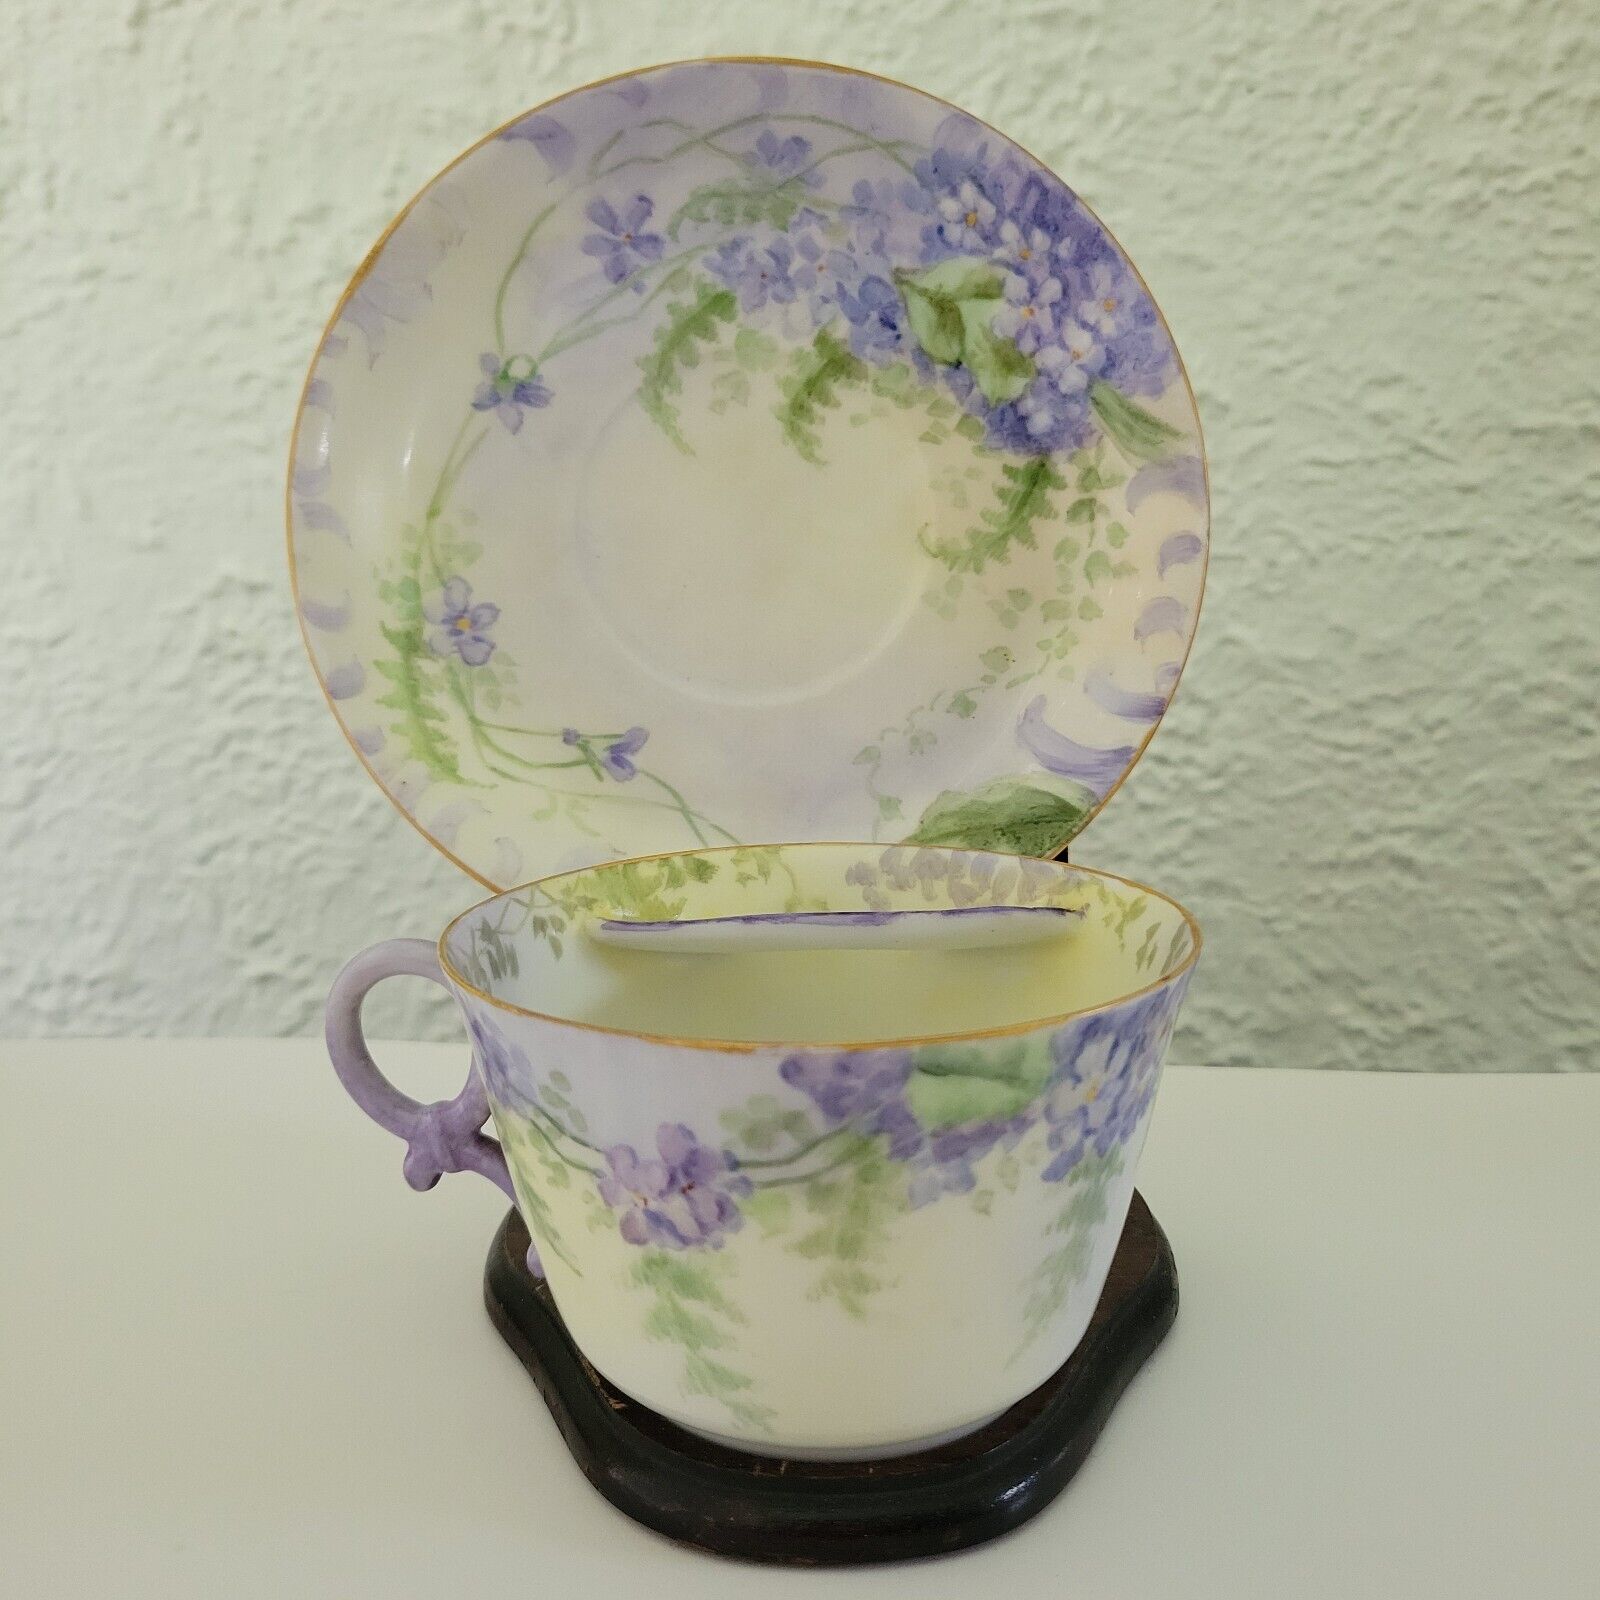 Vintage T&V France Limoges Mustache Cup & Saucer Floral gold trim purple flower